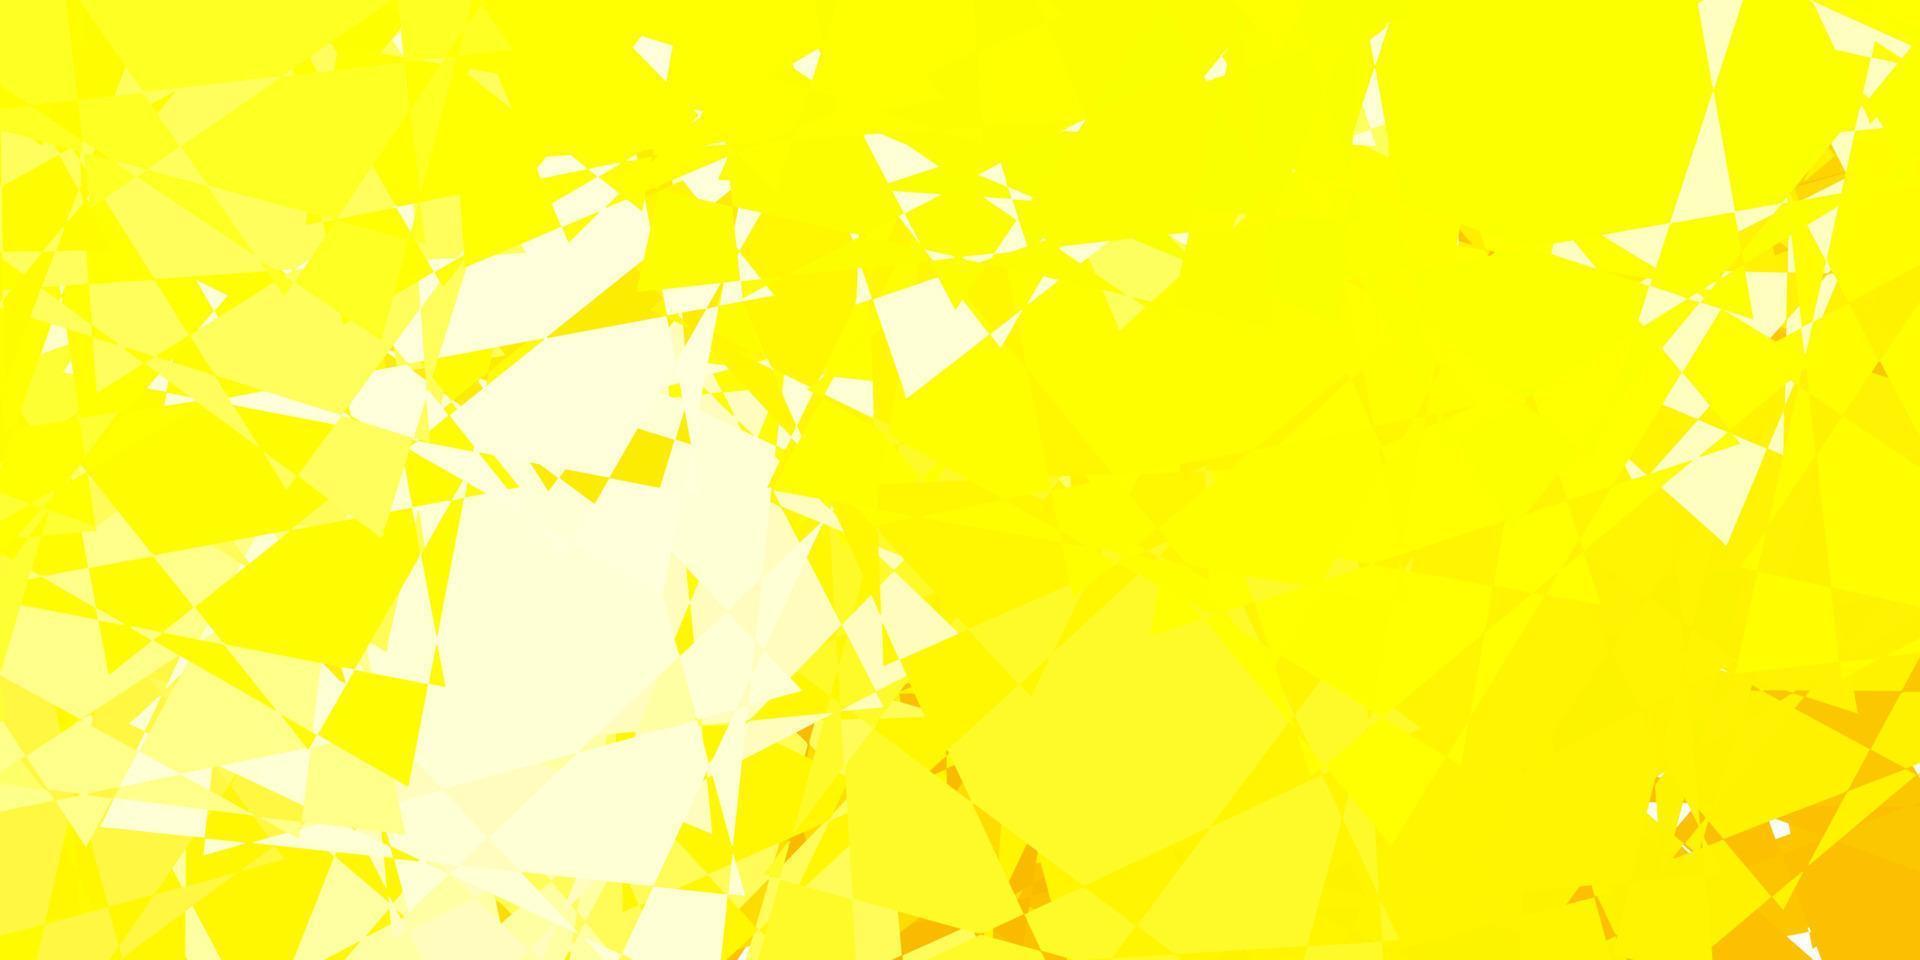 ljus gul vektor bakgrund med trianglar.